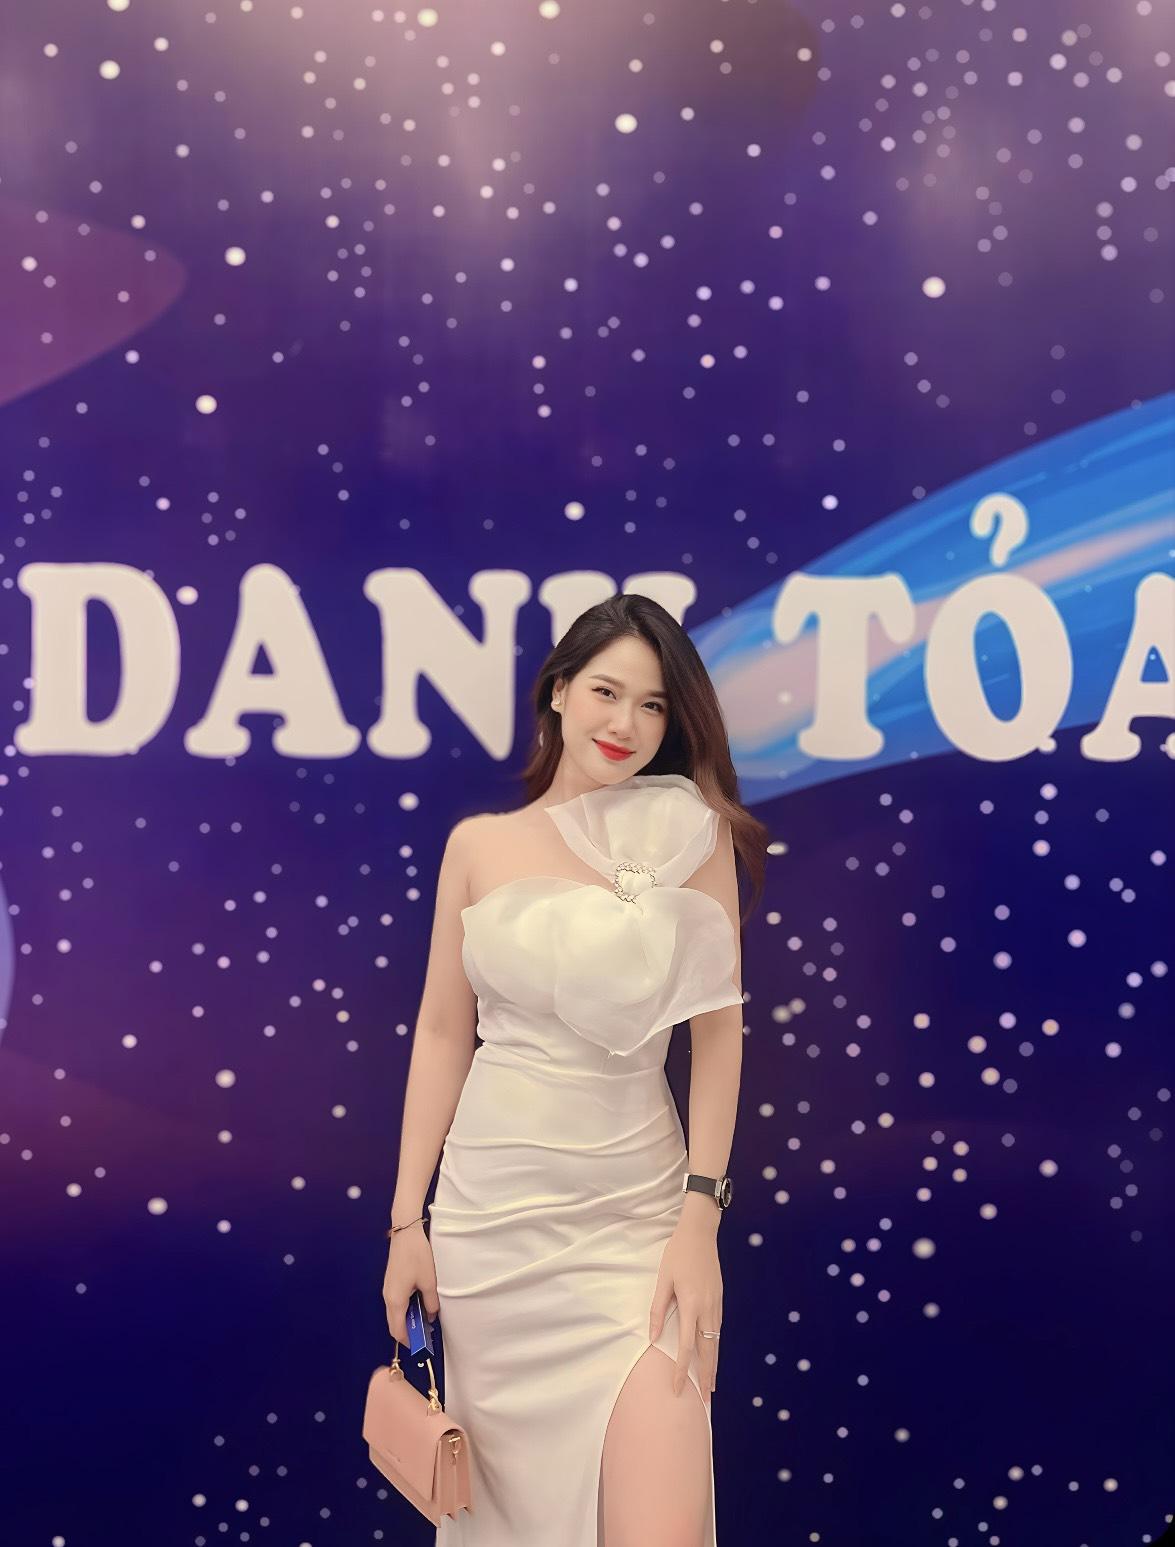 Lê Thanh Ngọc - Từ Hot girl ngành thẩm mỹ trở thành Idol Livestream TikTok sáng giá- Ảnh 4.